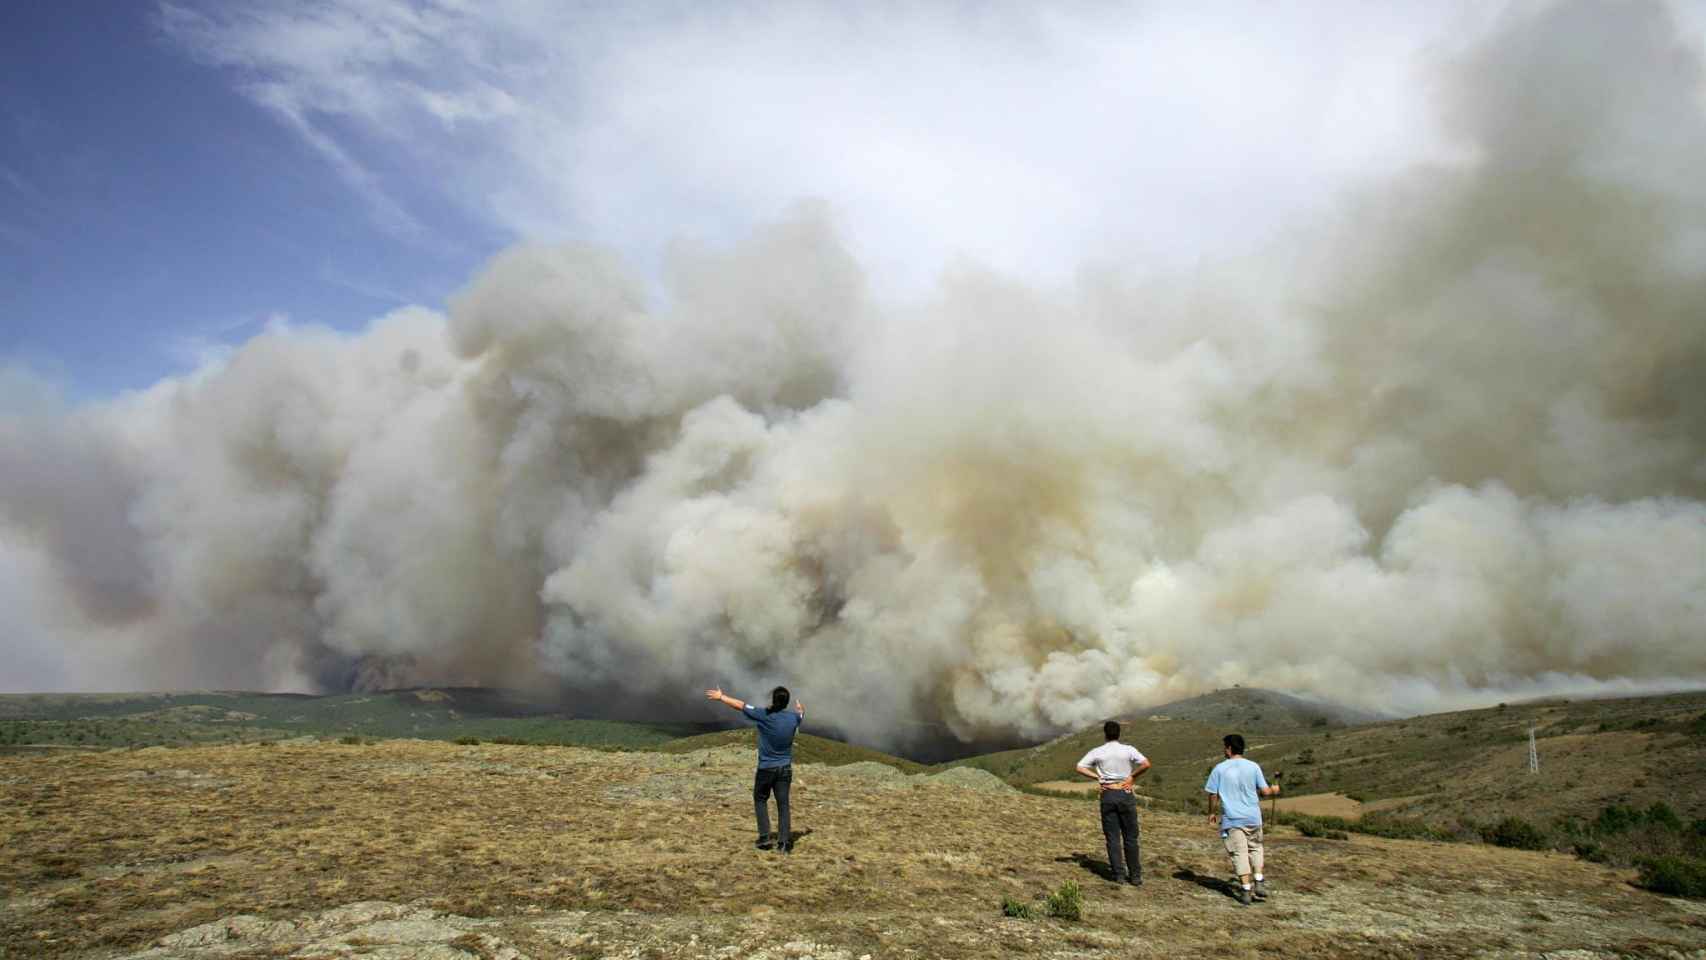 Voluntario luchando contra las llamas en el incendio del Alto Tajo.